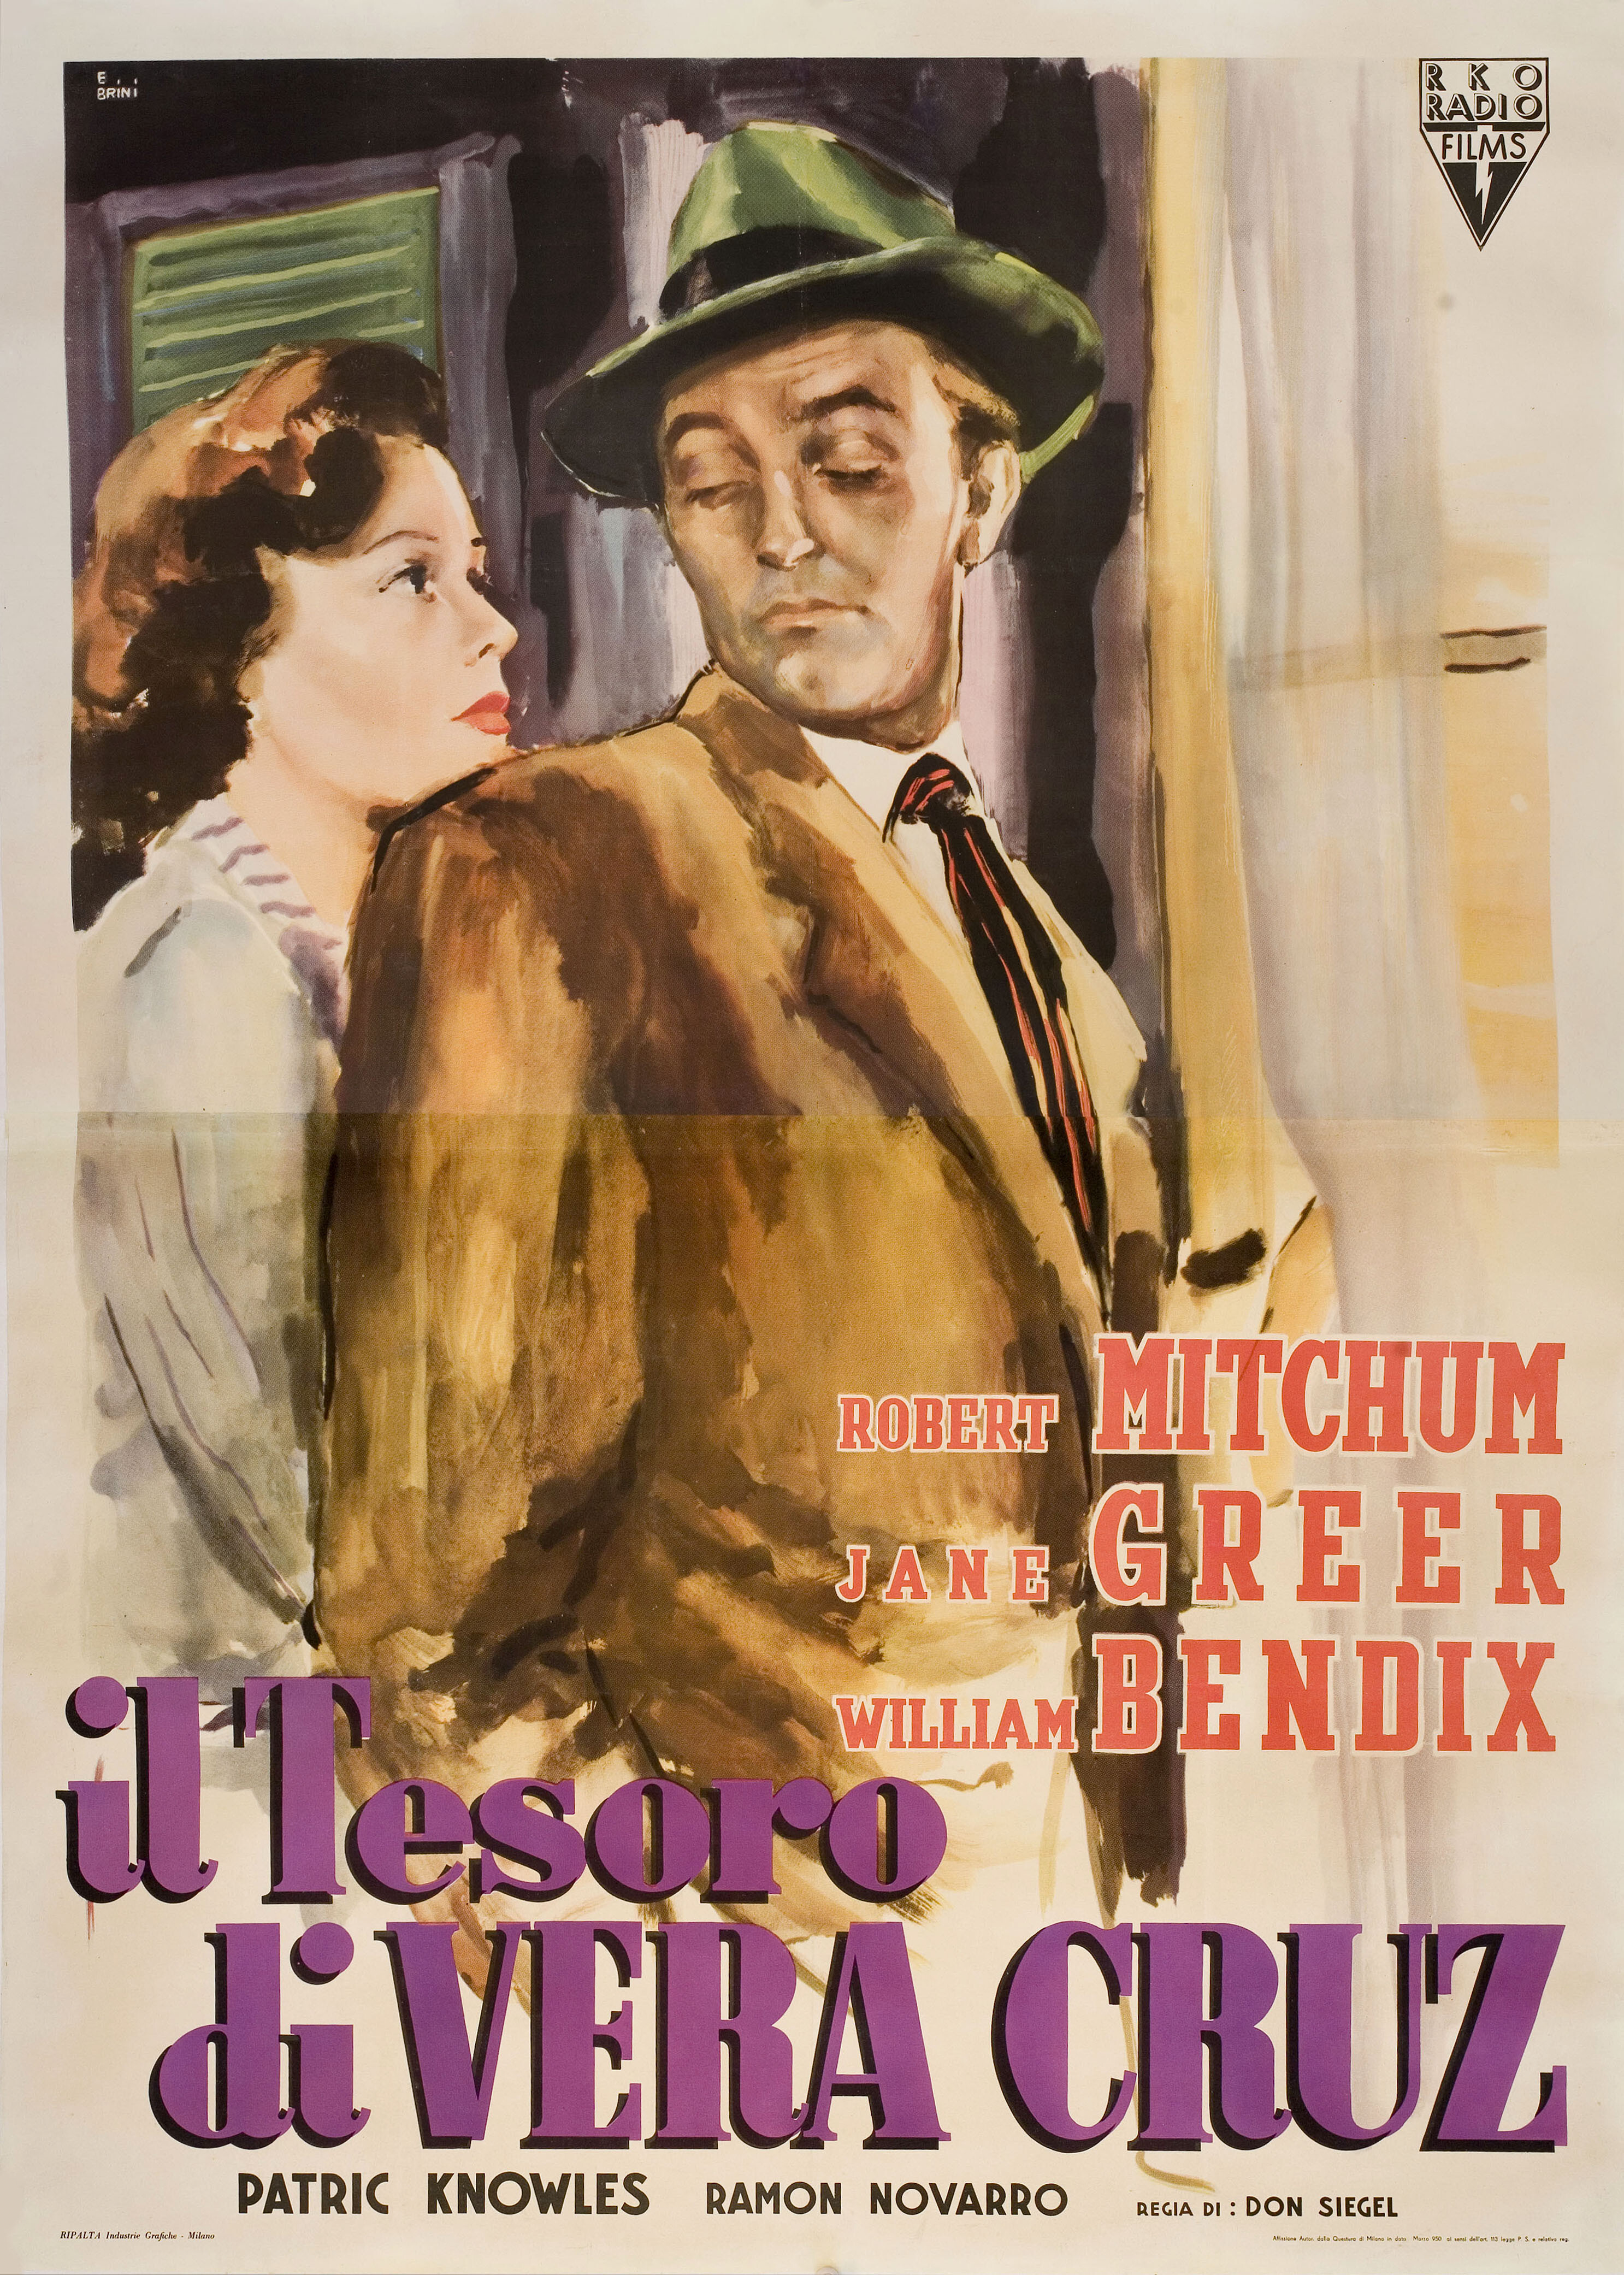 Большой обман (The Big Steal, 1949), режиссёр Дон Сигел, художественный постер к фильму (Италия, 1949 год), автор Эрколе Брини